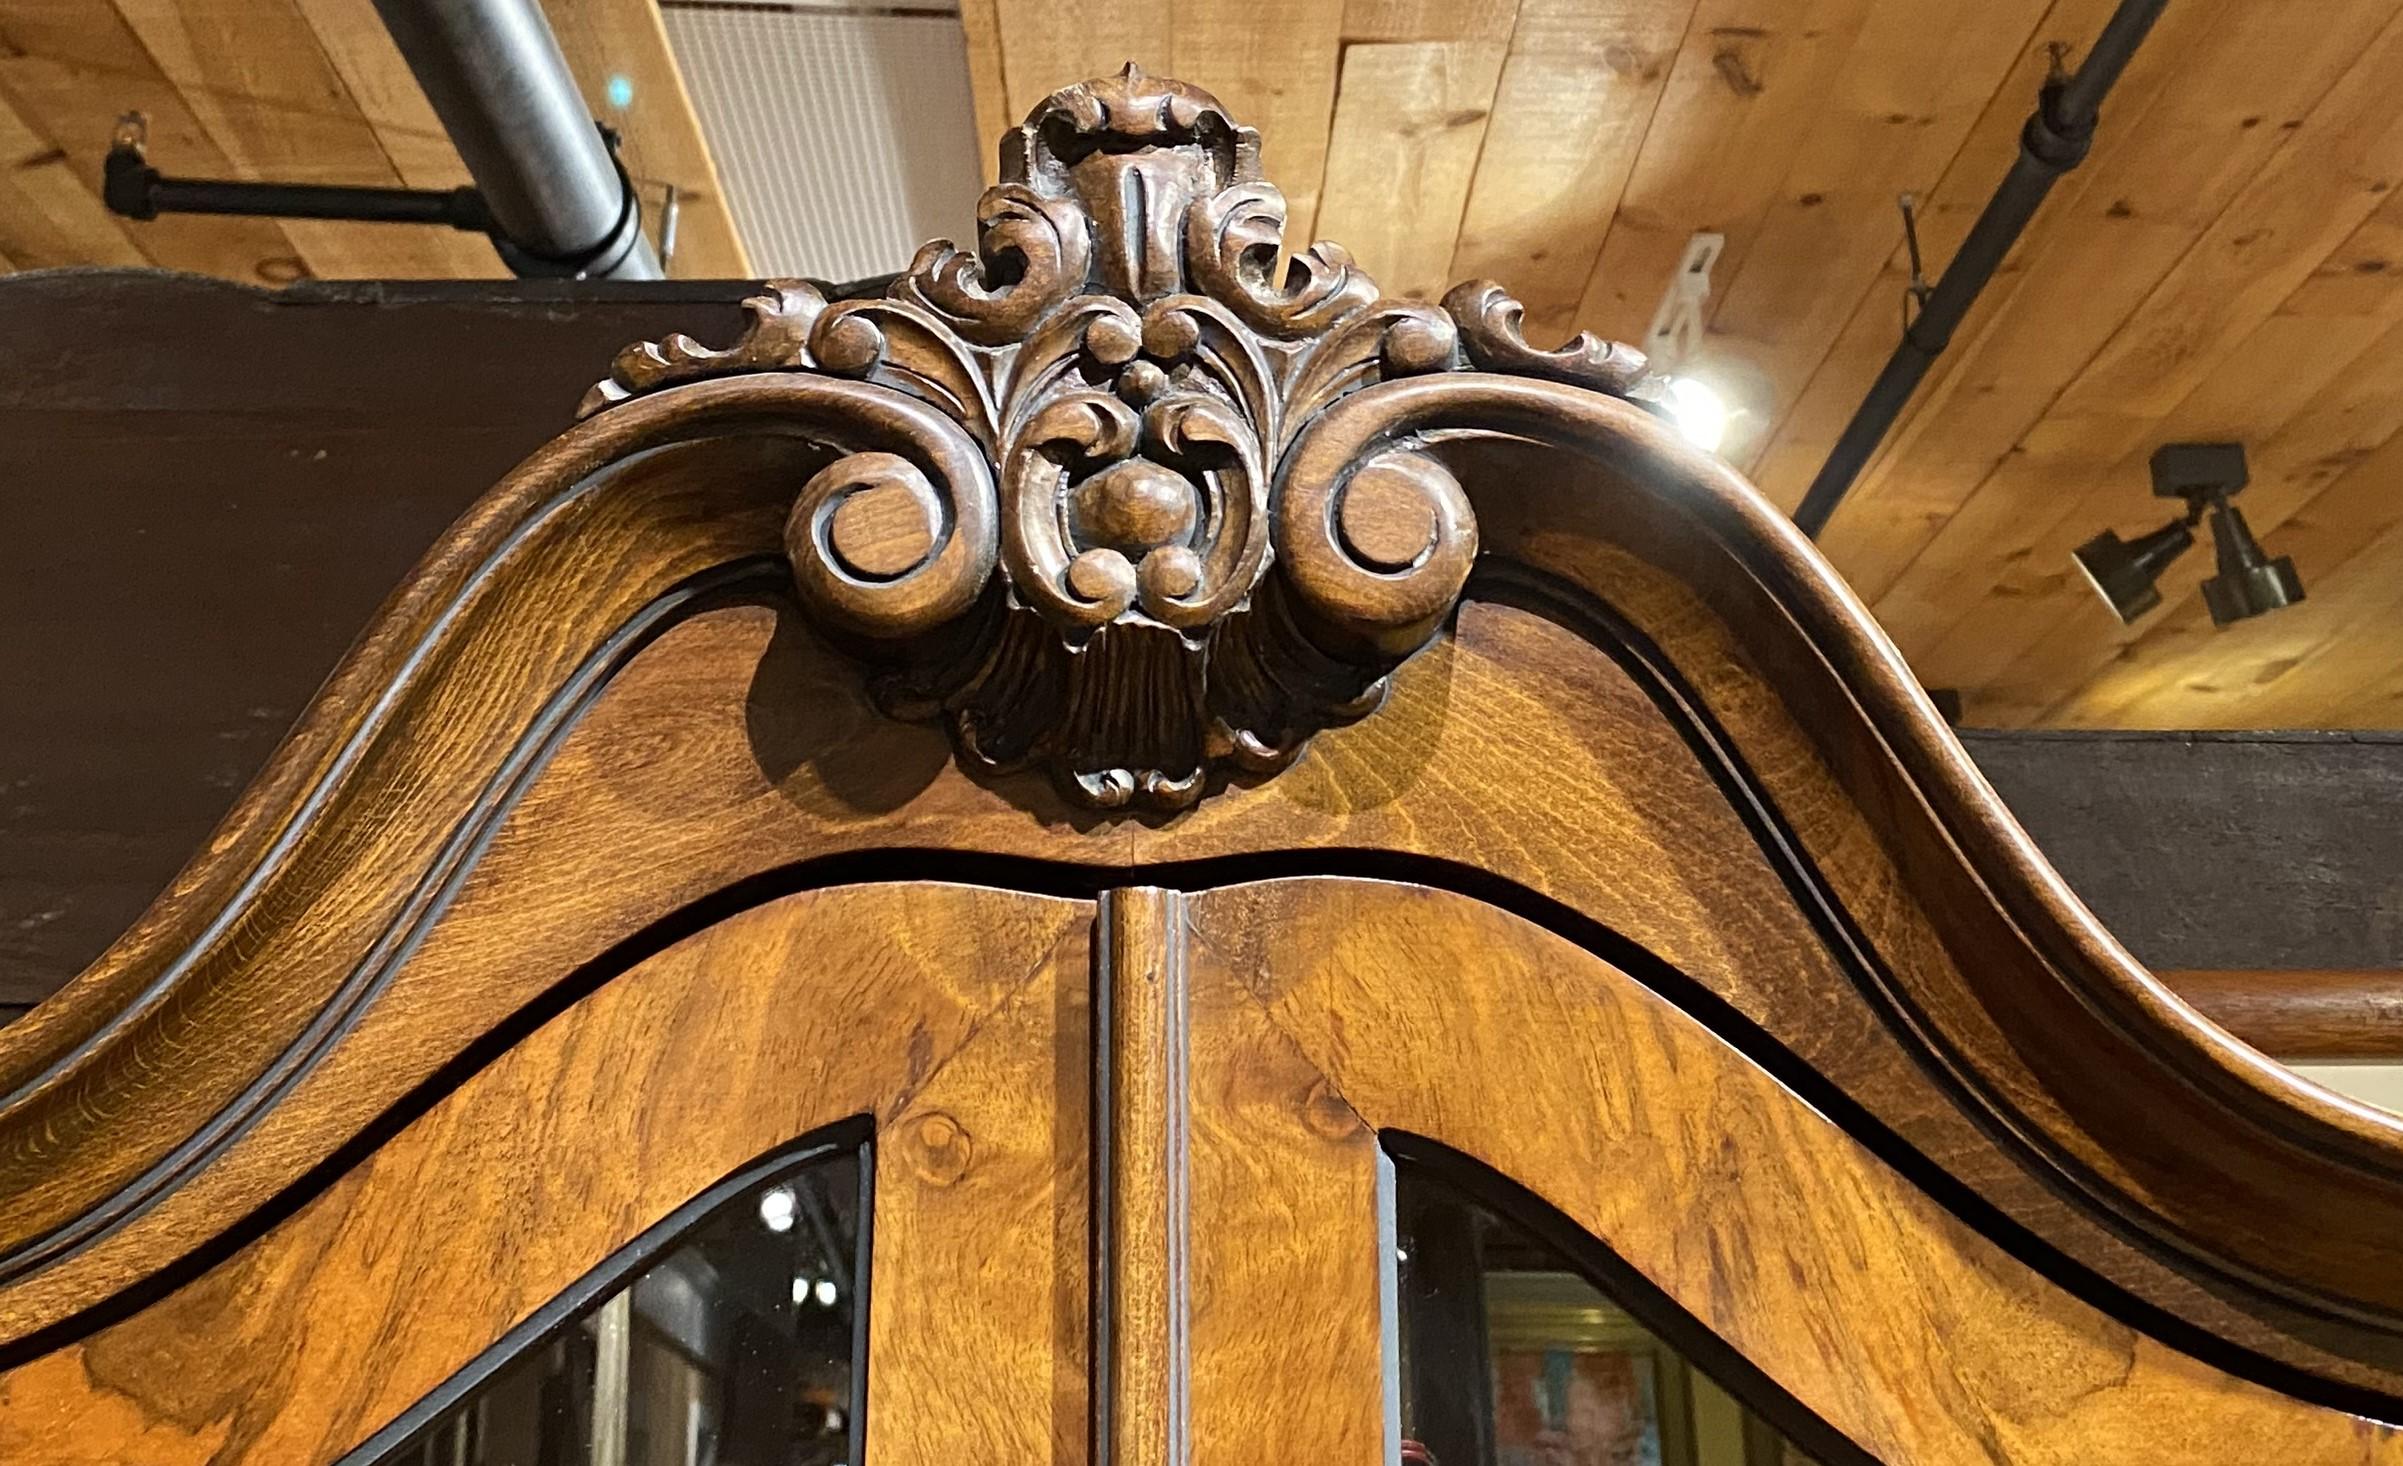 Ein schönes Beispiel für eine kontinentale Barock Revival Noppen Nussbaum einteiligen Schrank in einem Bombé Form mit gewölbten geschnitzt foliate Kamm über zwei konforme Glas verglasten Türen, die zu einem zwei Regal Innenraum öffnen, Seite